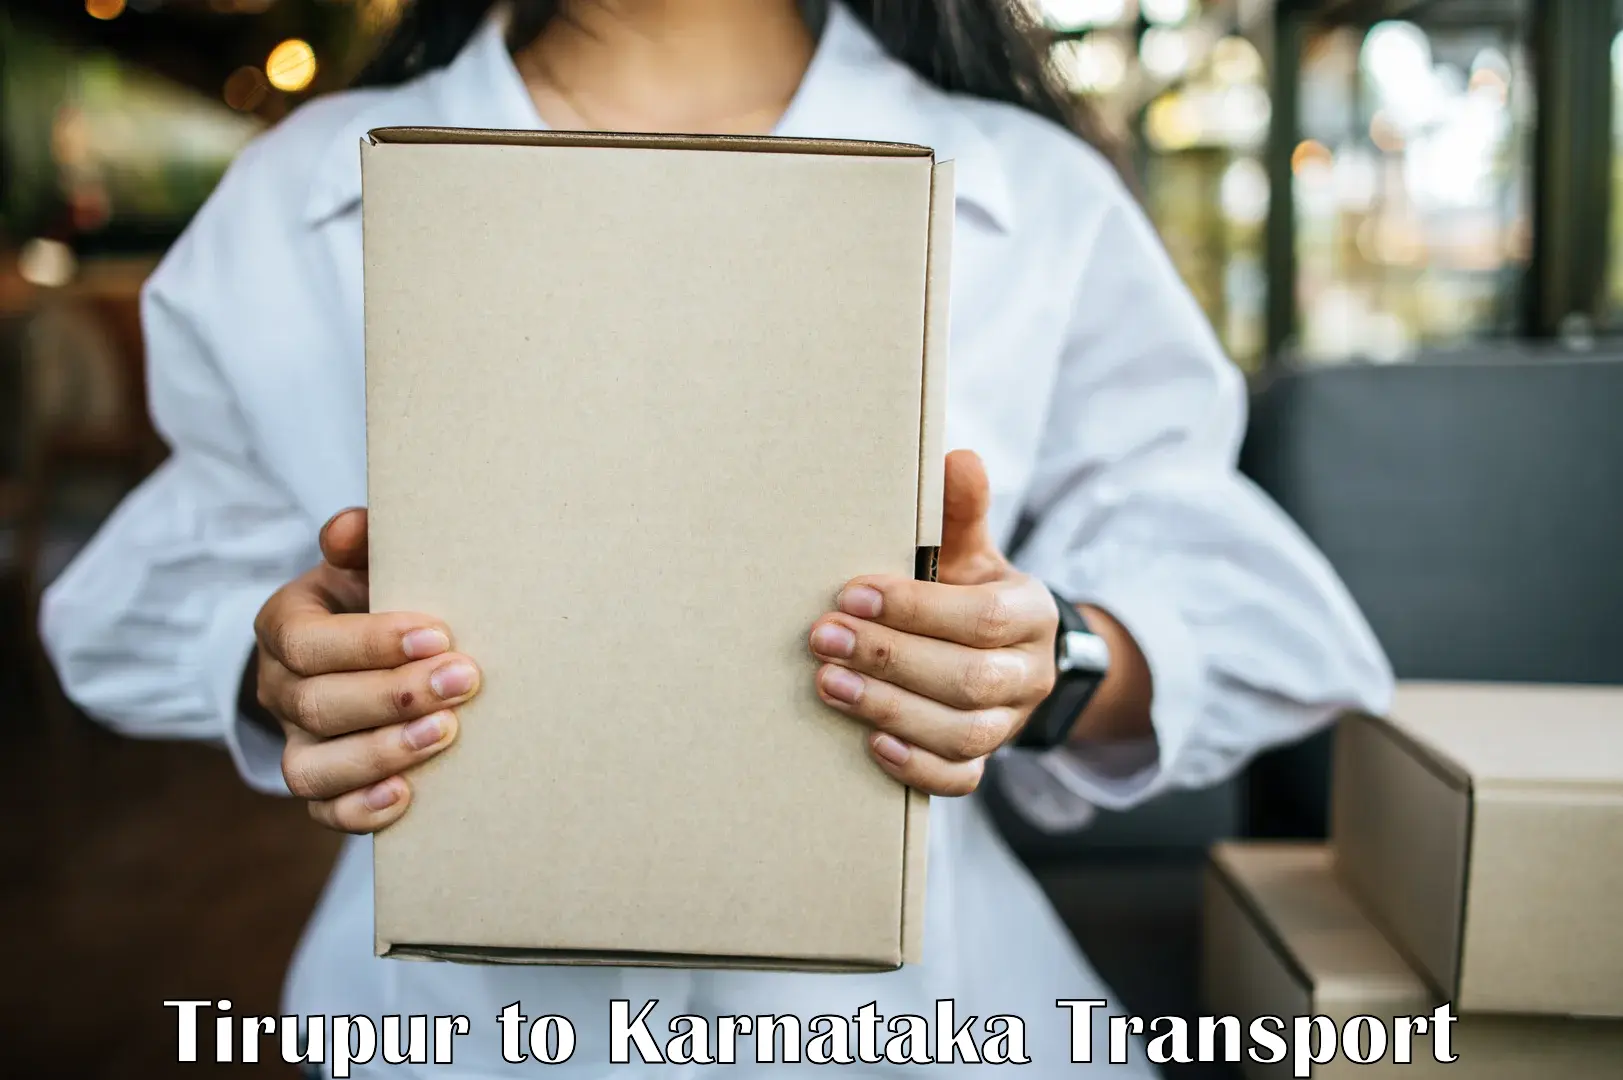 Nearest transport service Tirupur to Kerur